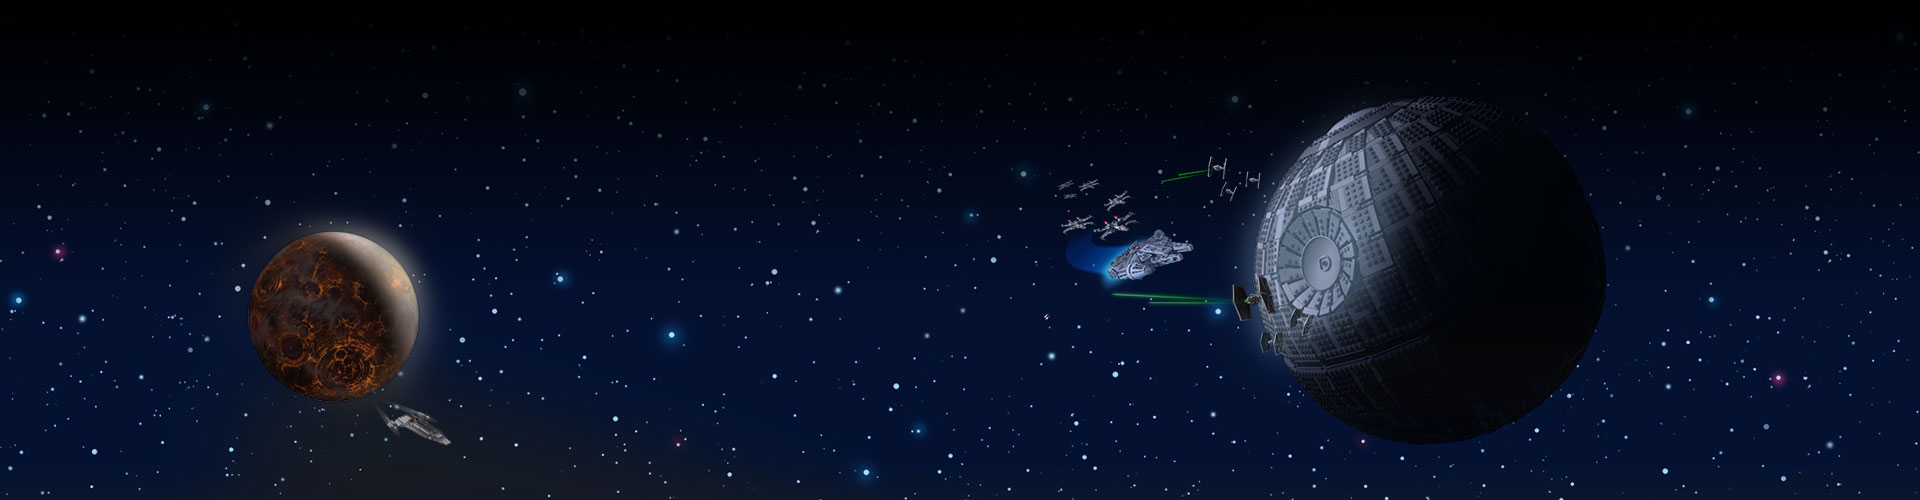 Две вражеские базы в космосе со звездами на заднем плане.